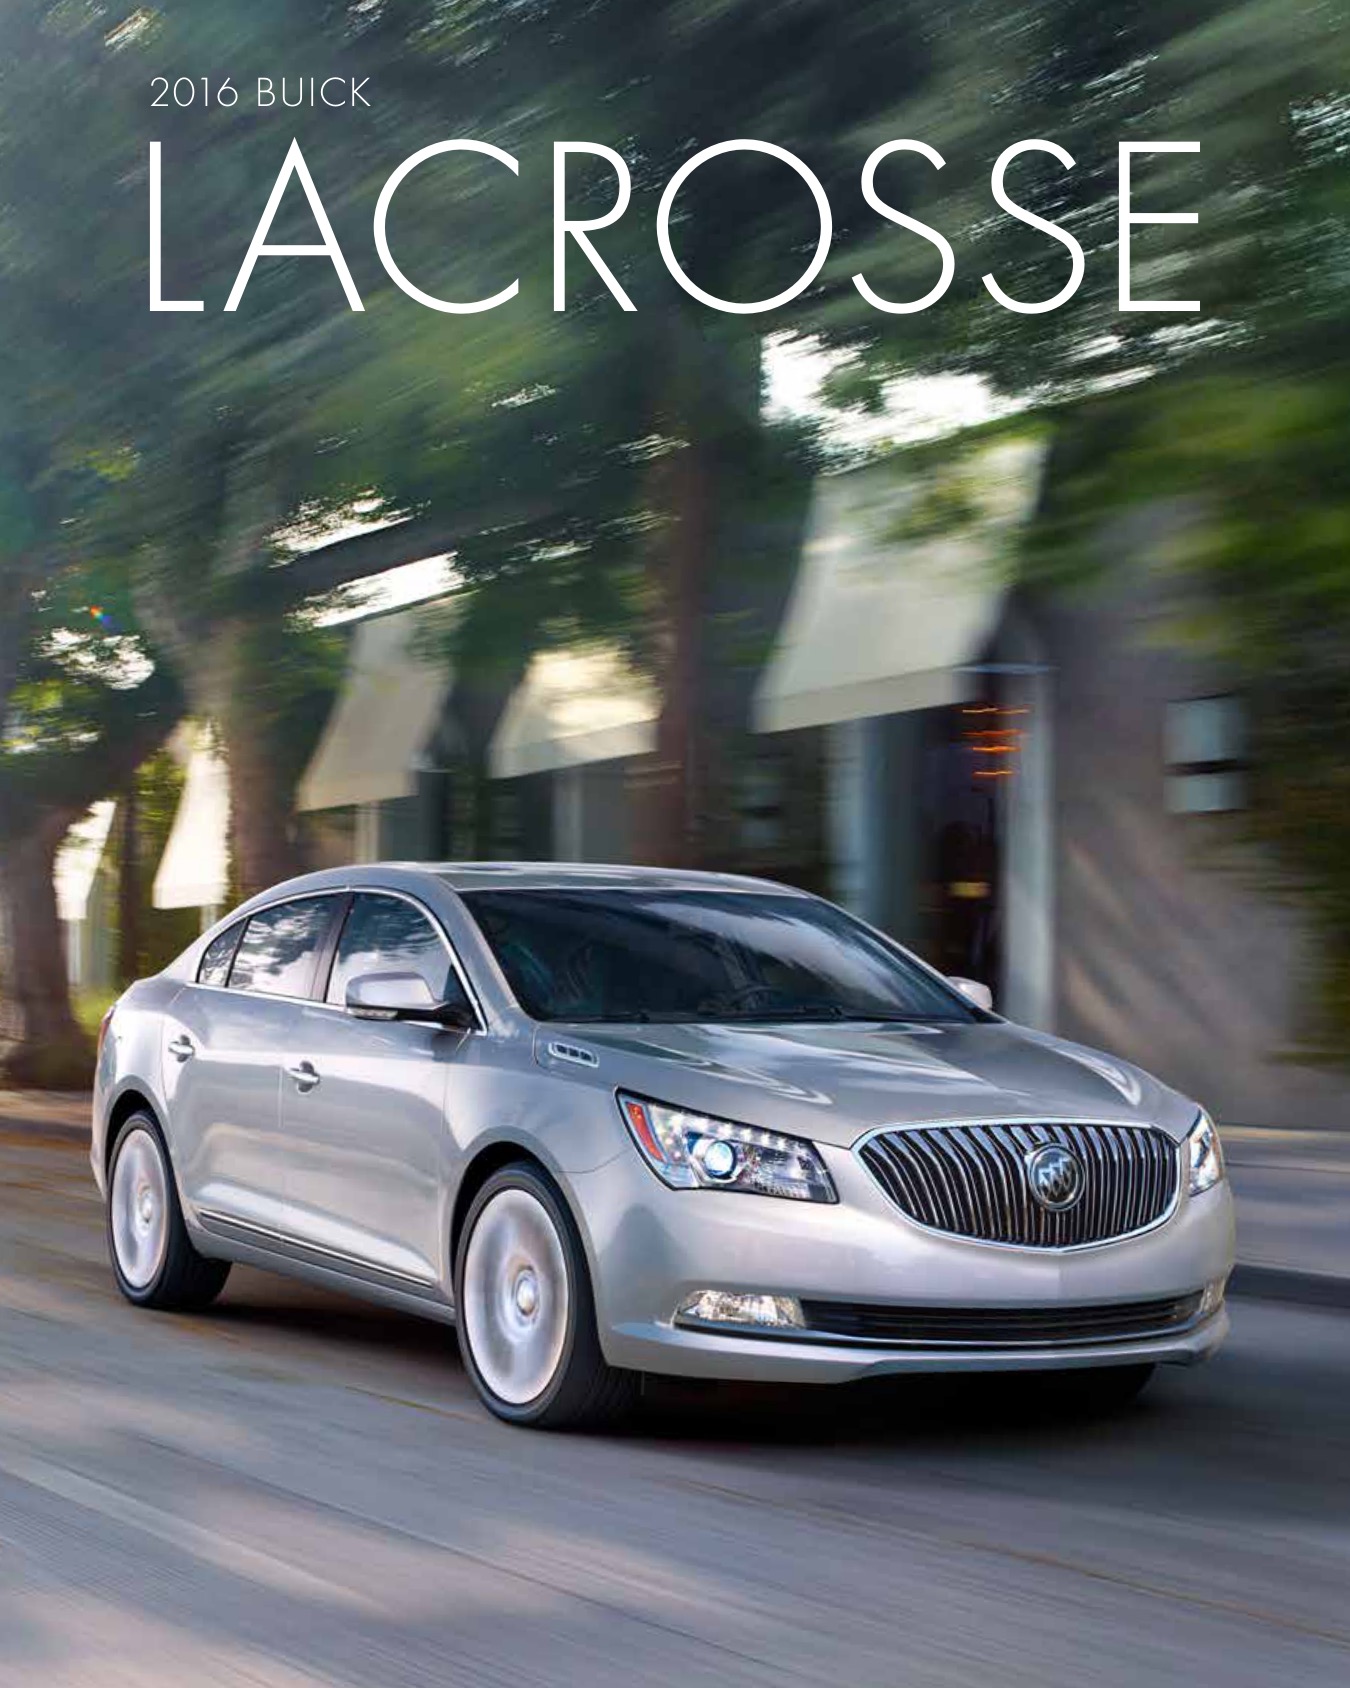 2016 Buick LaCrosse Brochure